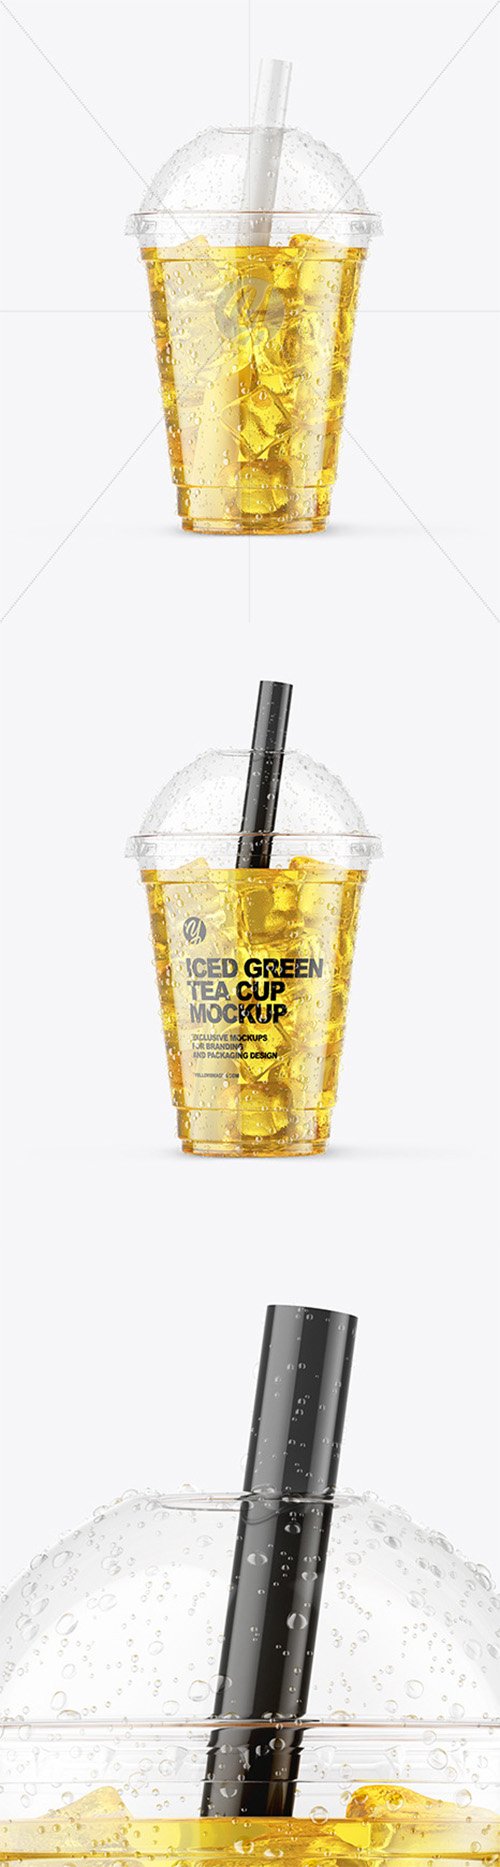 Iced Green Tea Cup Mockup 64934 TIF